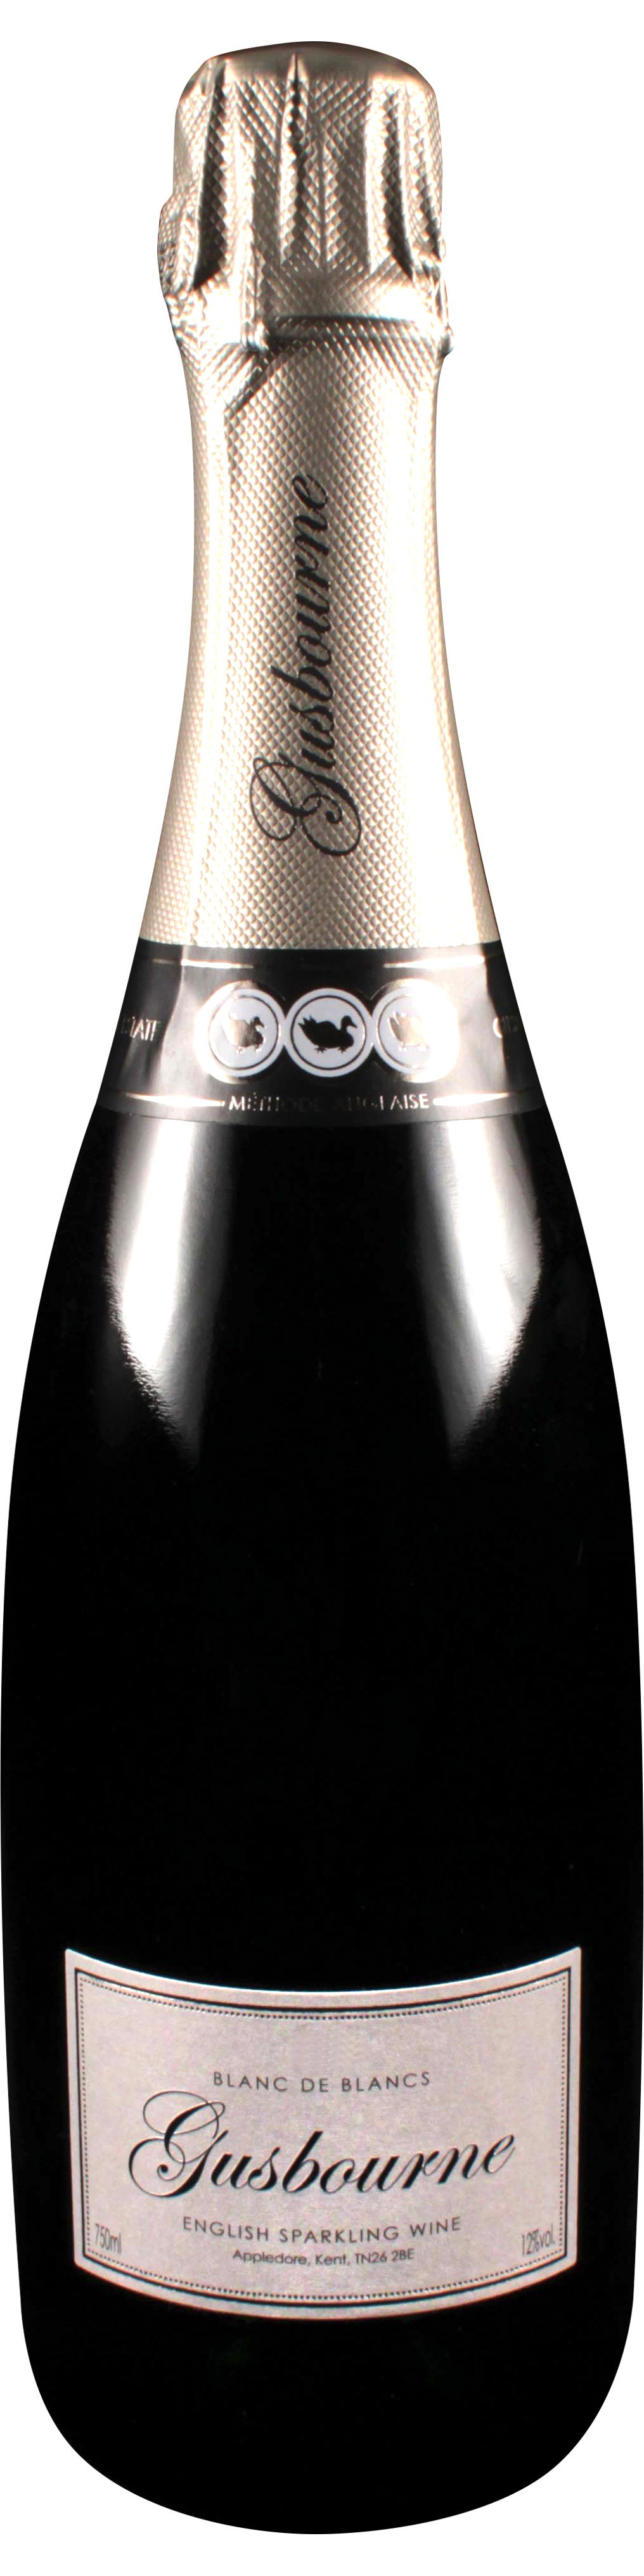 Bottle shot of 2009 Blanc de Blancs